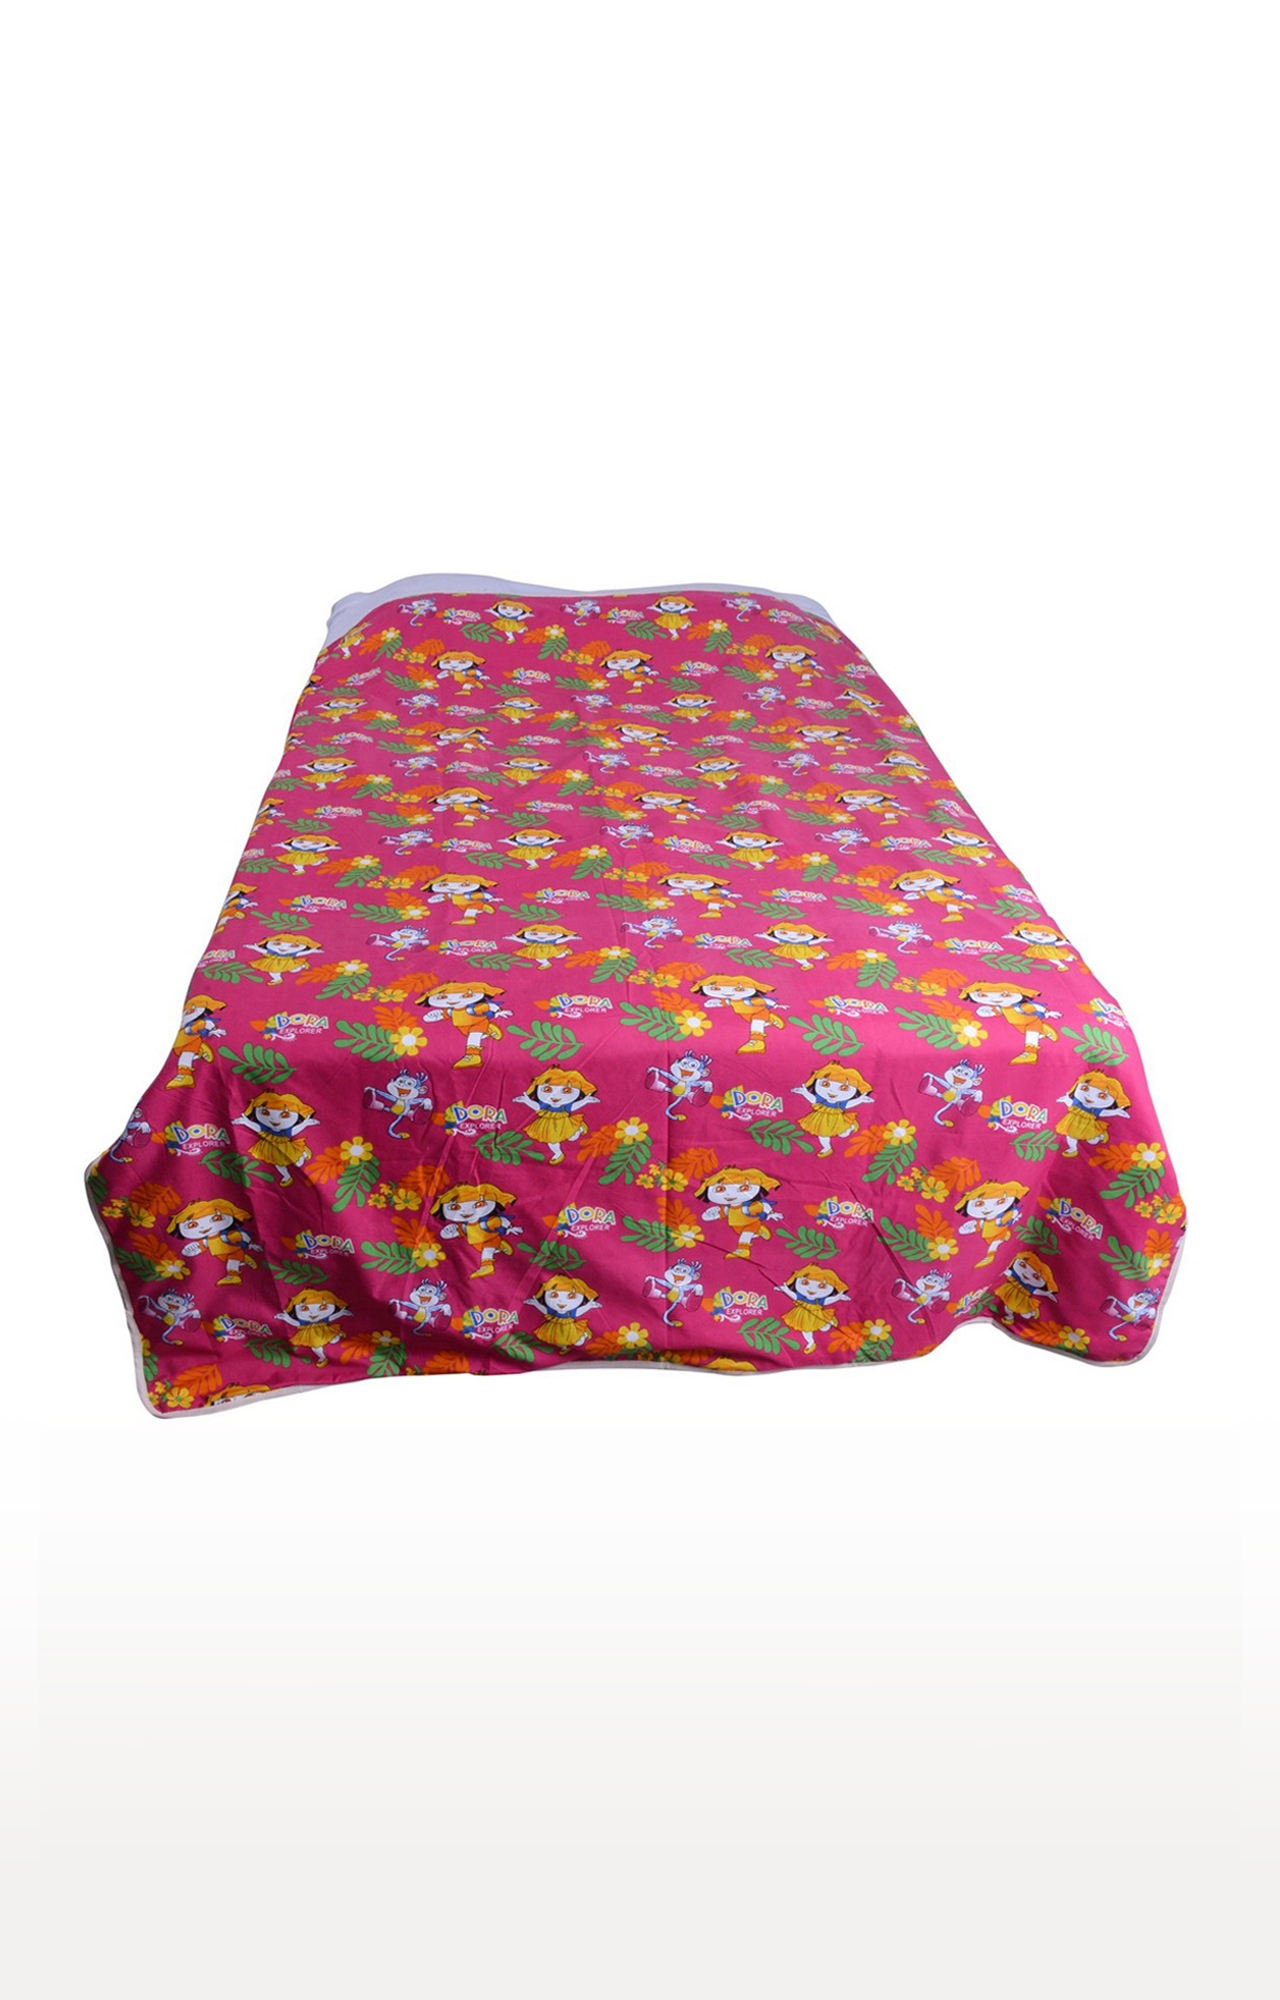 V Brown | Dora Explorer Printed Cotton 3 Layer Single Bed Quilt Dohar 0